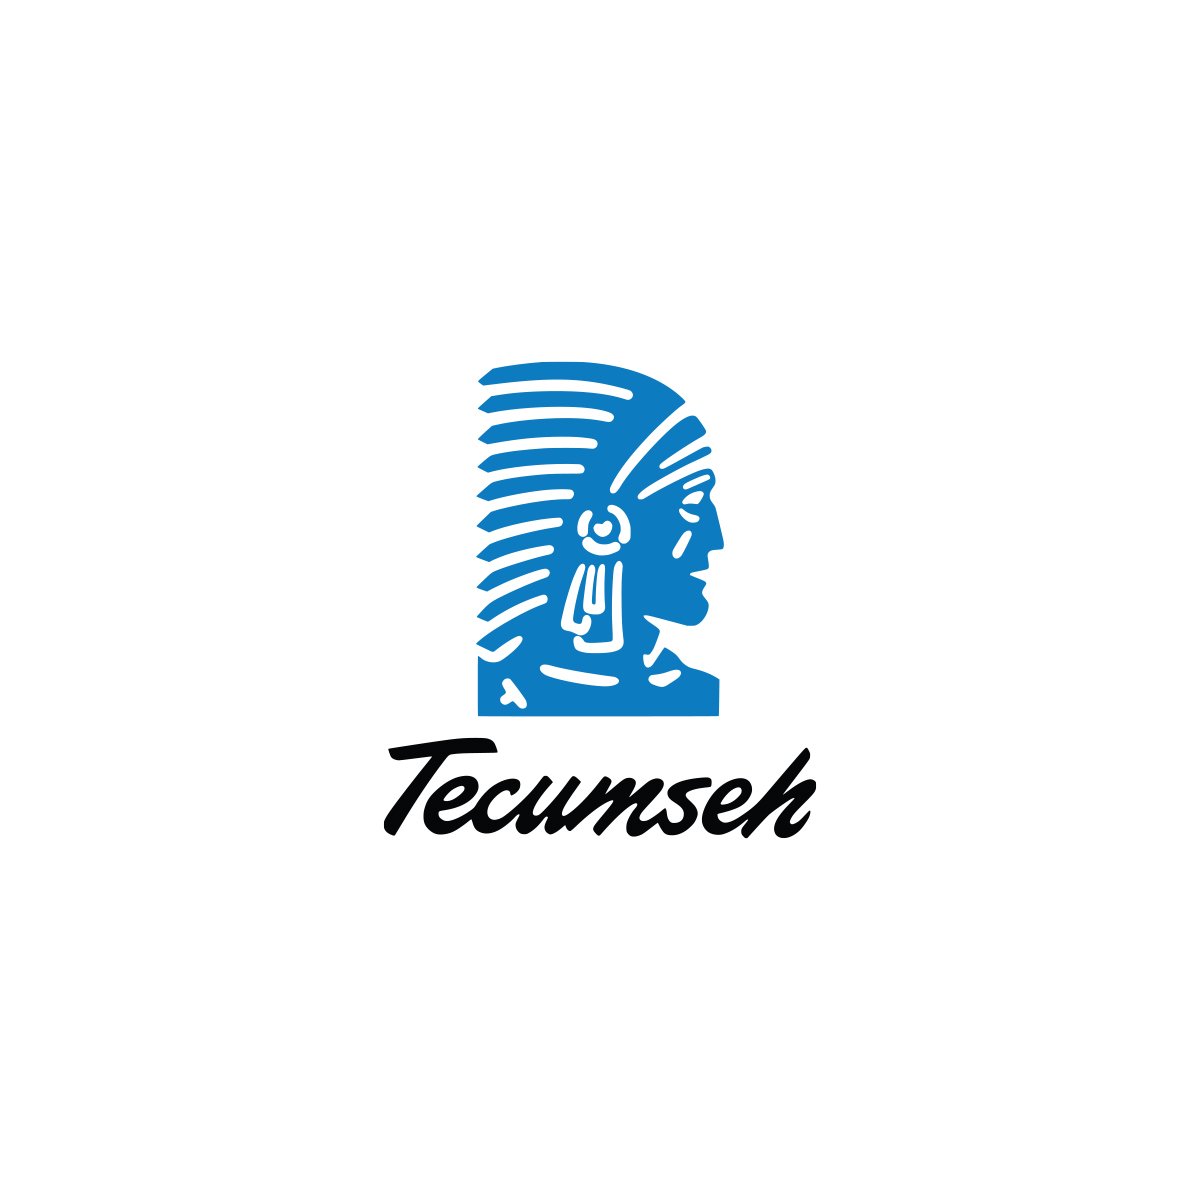 tecumseh logo.jpg